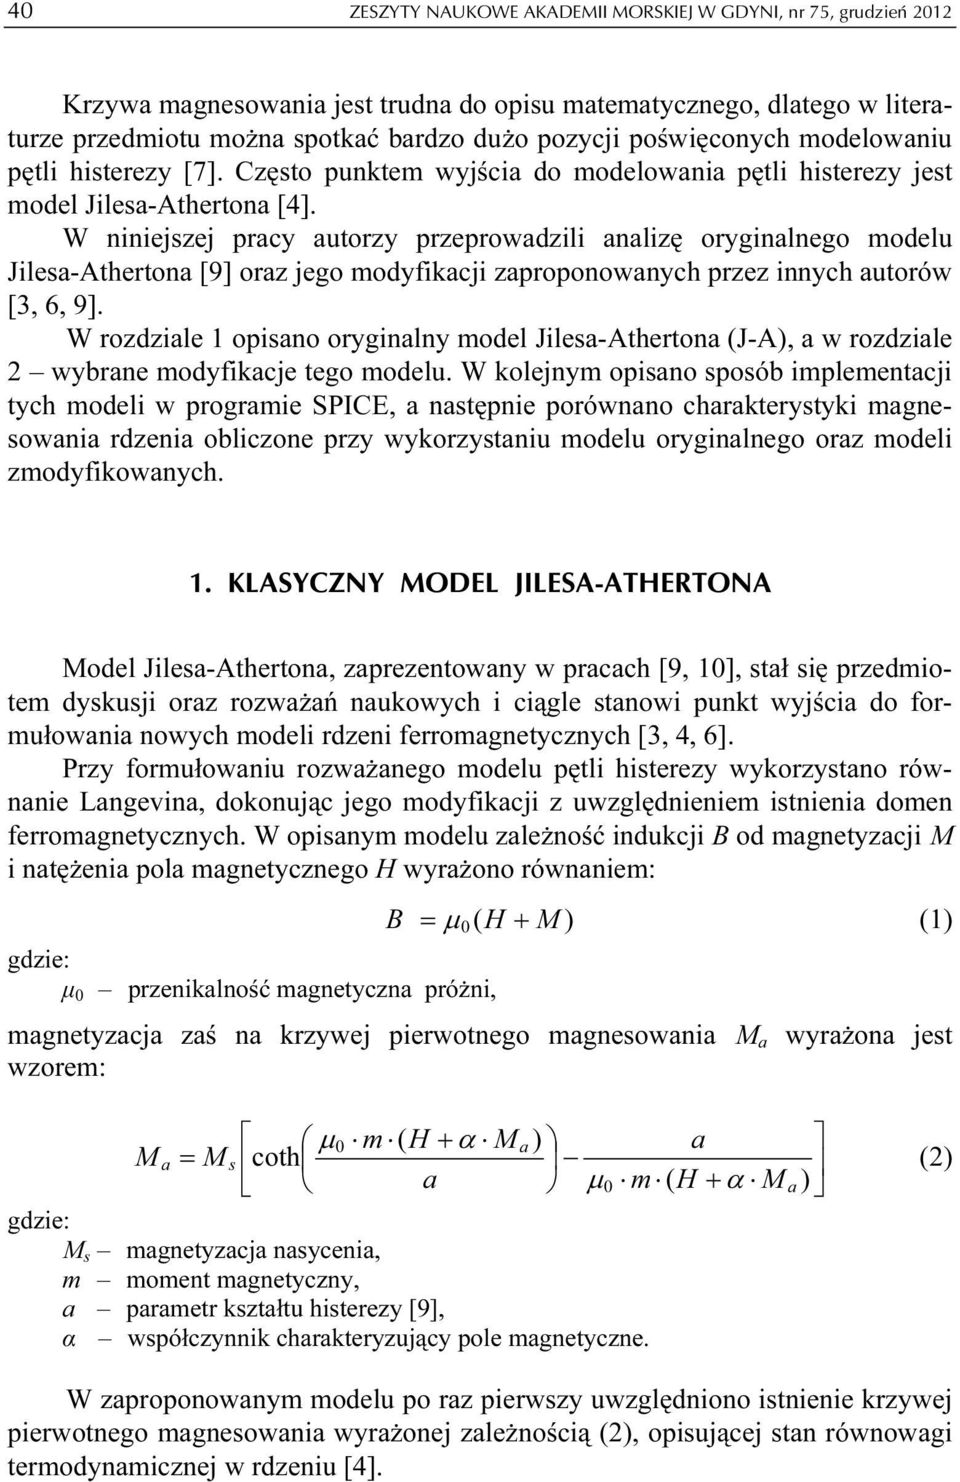 W niniejszej prcy utorzy przeprowdzili nlizę oryginlnego modelu Jiles-Atherton [9] orz jego modyfikcji zproponownych przez innych utorów [3, 6, 9].